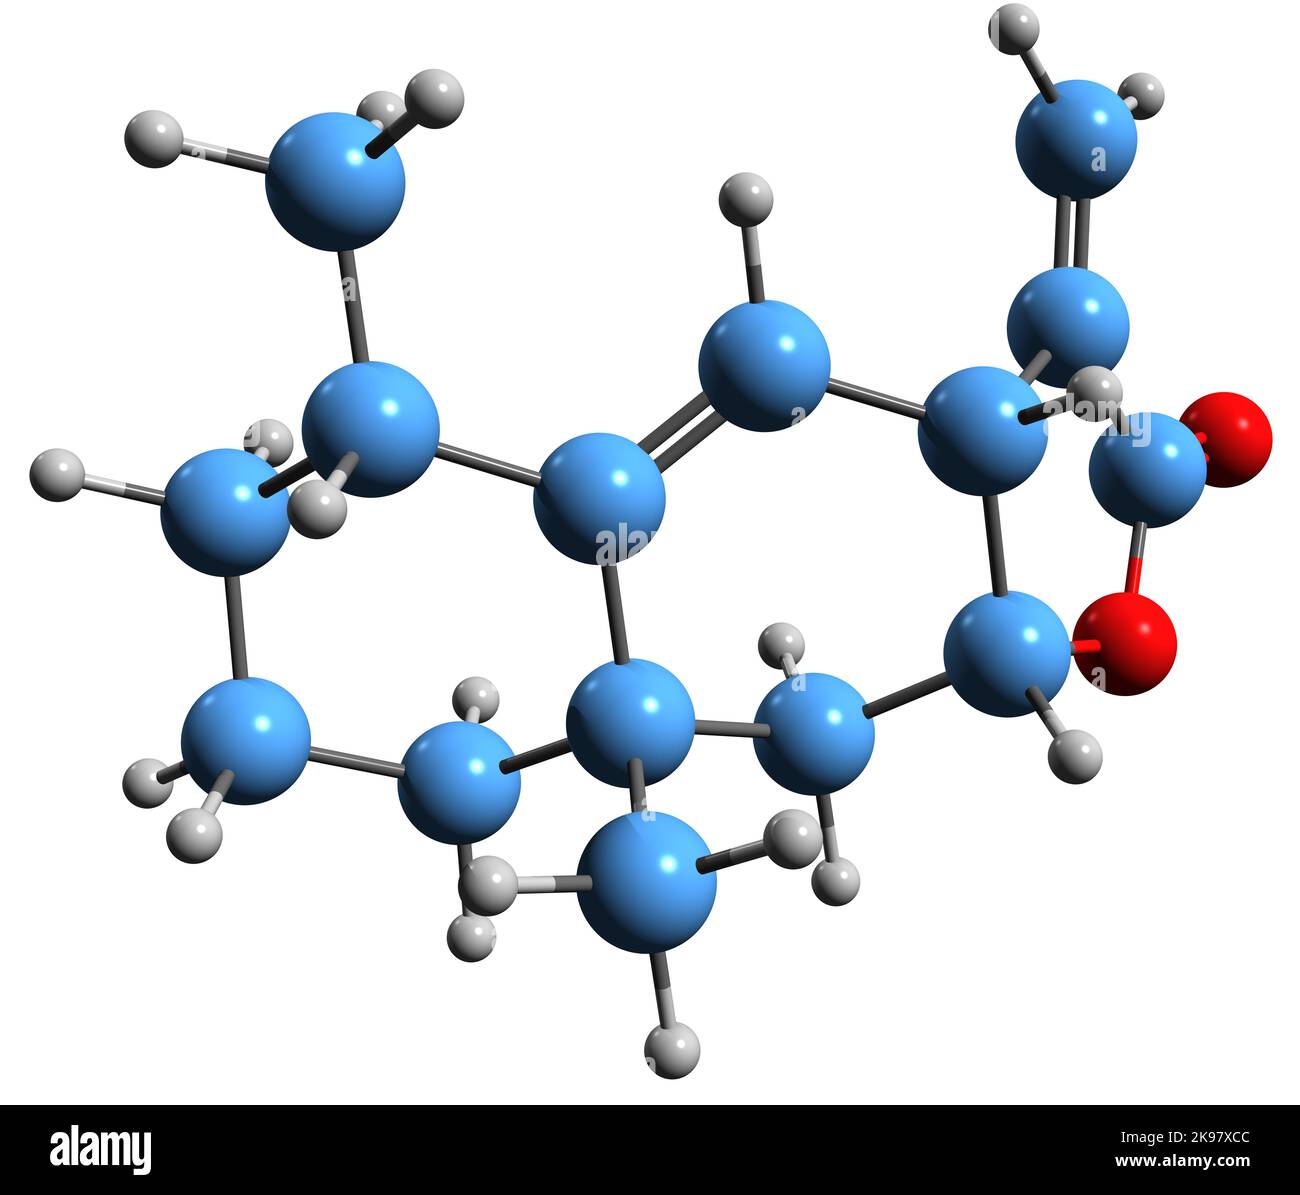 3D Abbildung der Skelettformel von Alantolacton - molekularchemische Struktur des allergenen Sesquiterpenlactons auf weißem Hintergrund Stockfoto